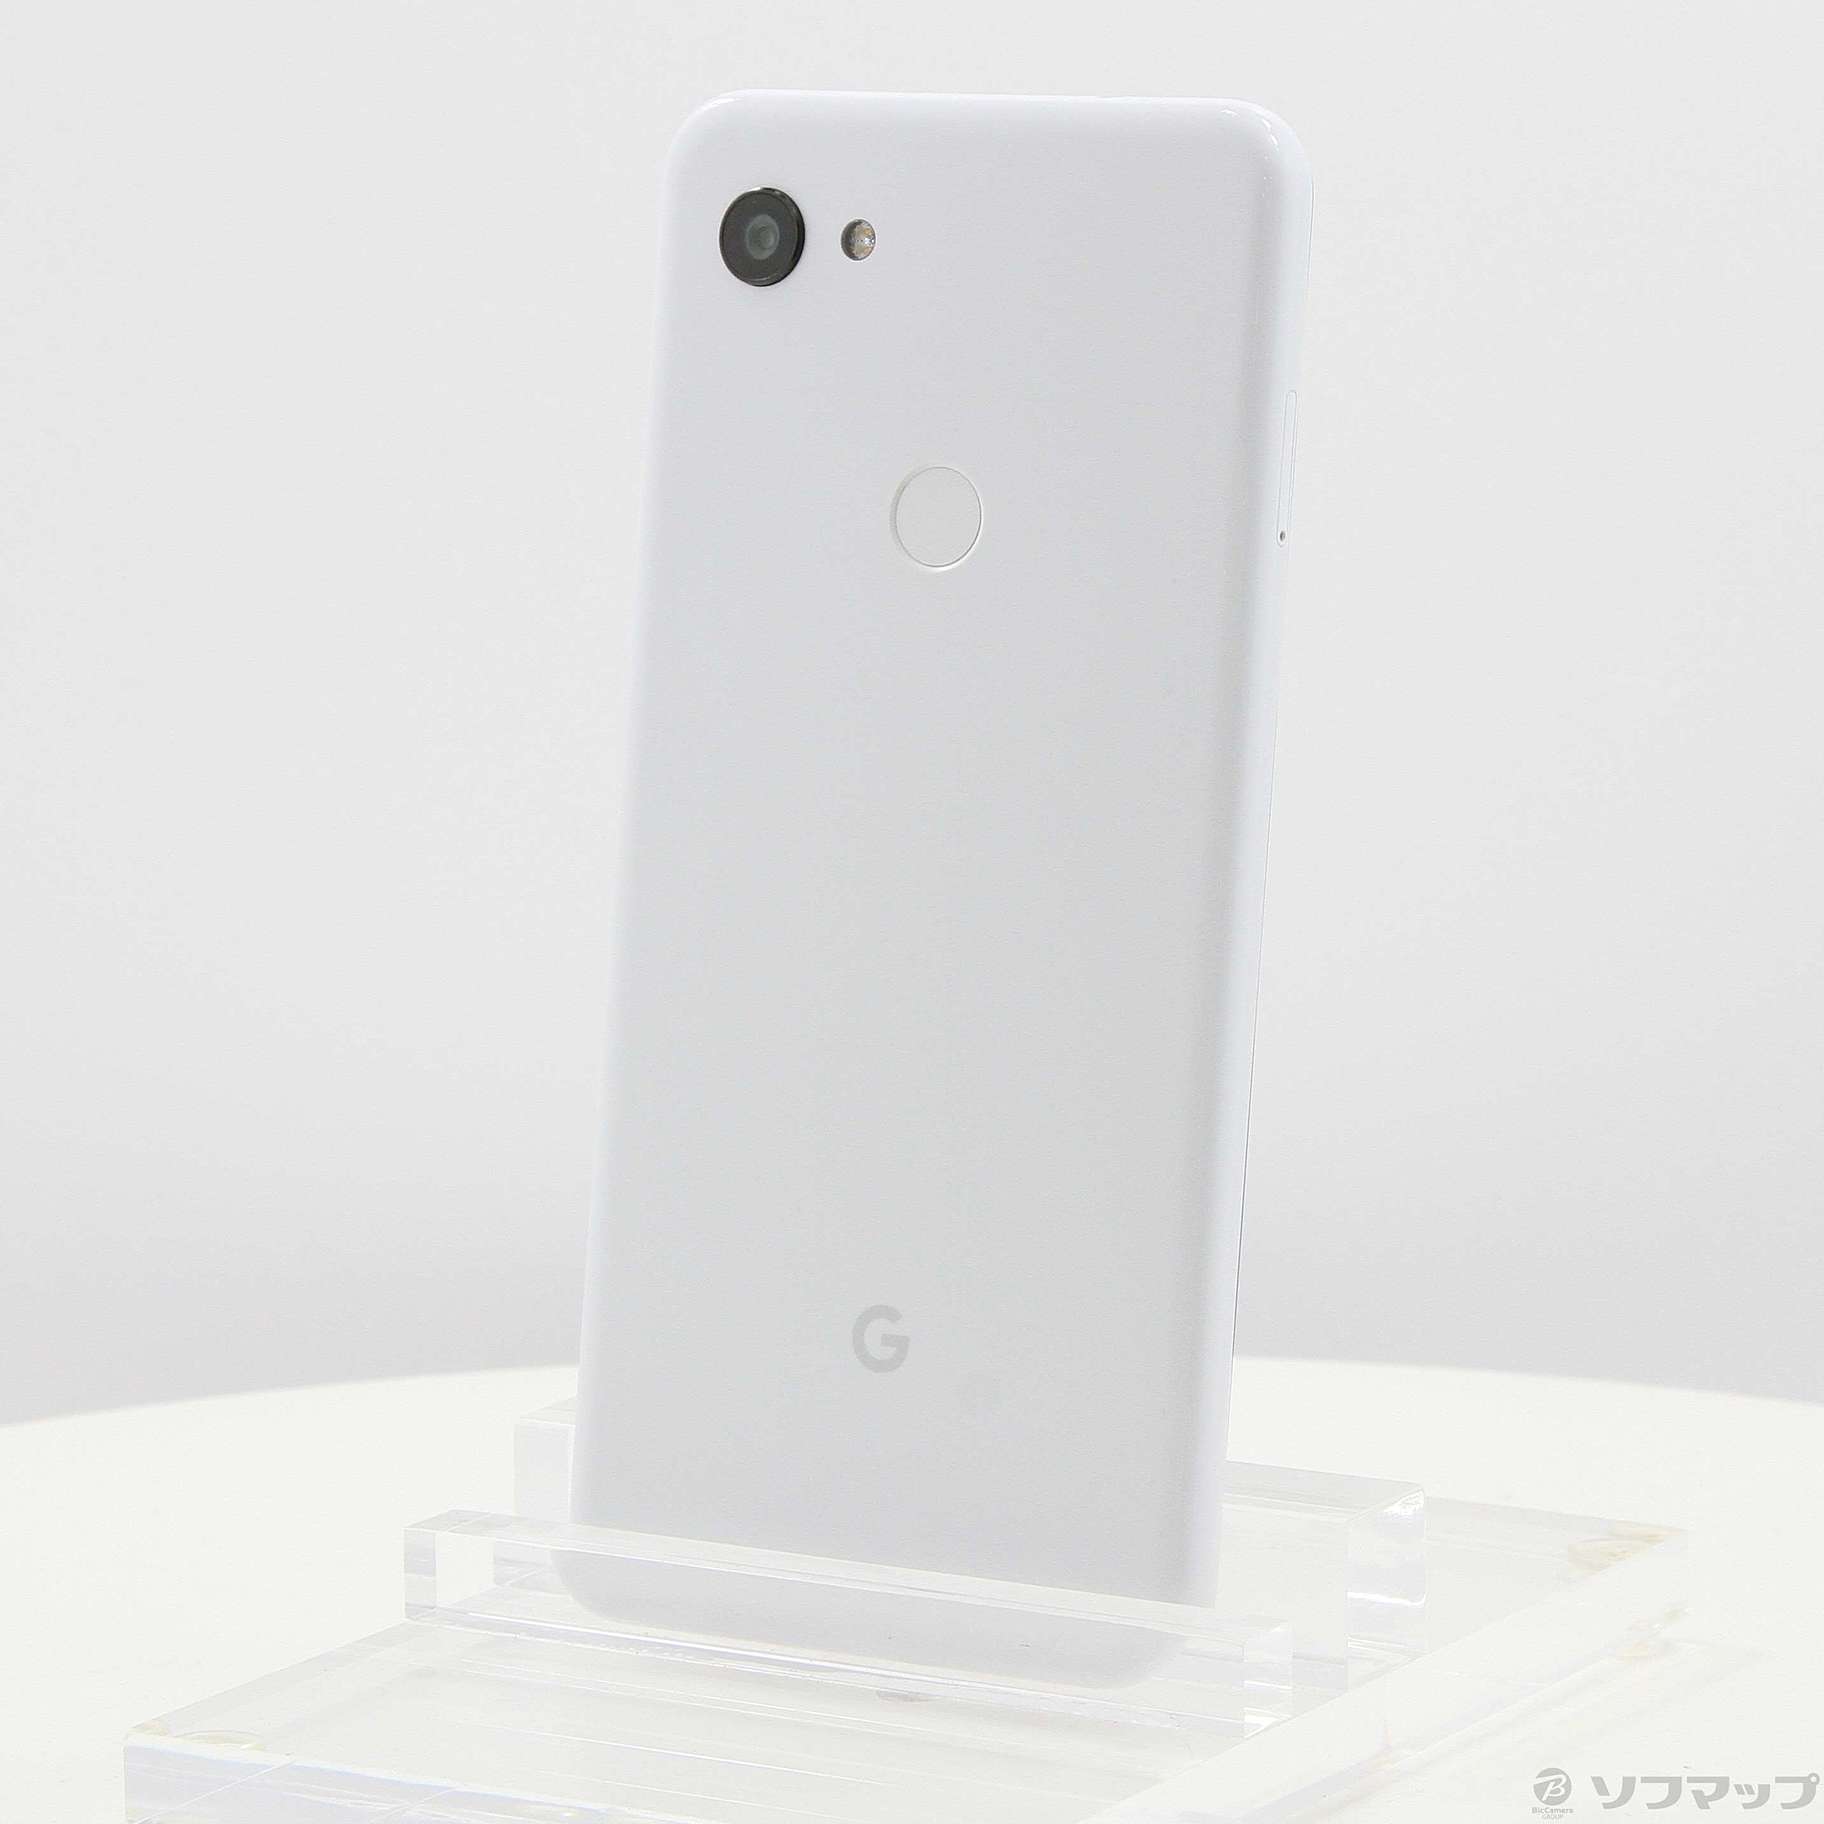 google pixel 3a XL 64g white sim free